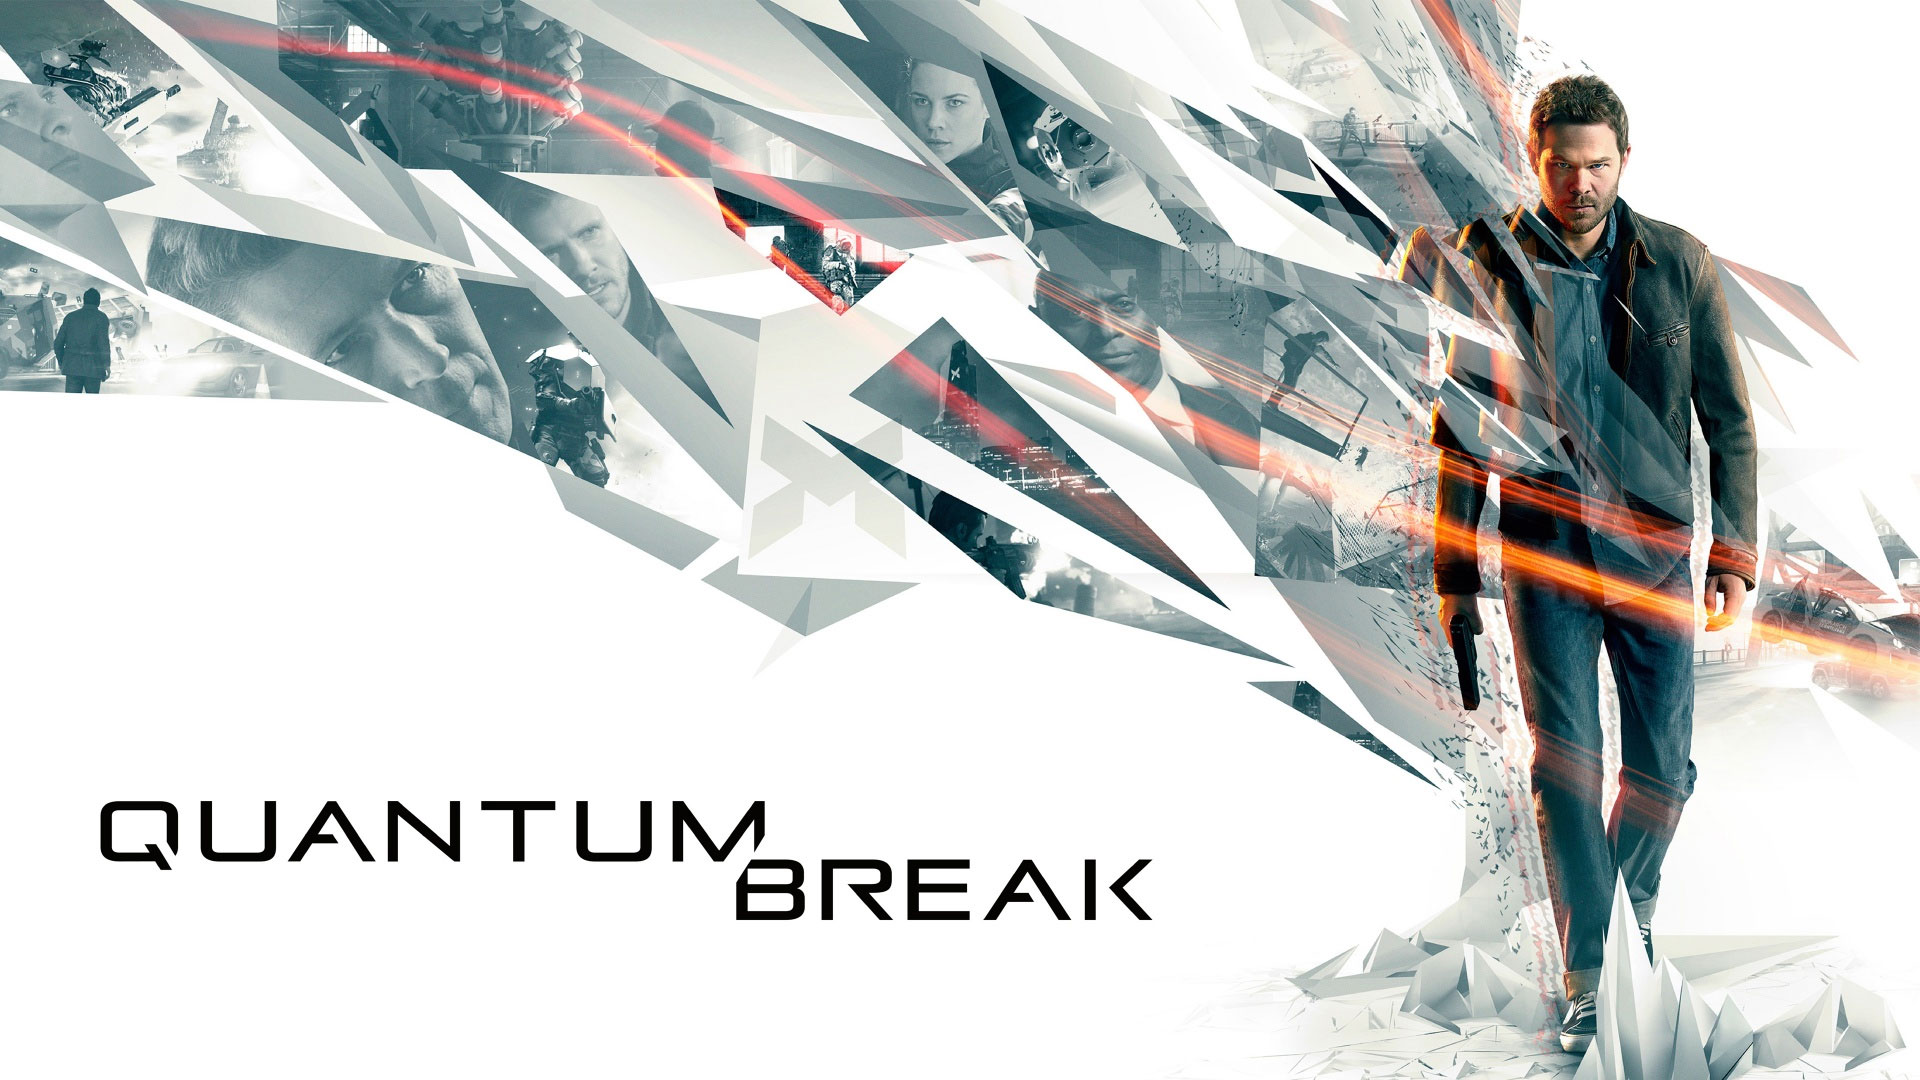 Quantum Break 720p 1080p And 4k Ultra HD Wallpaper Gaming So Far